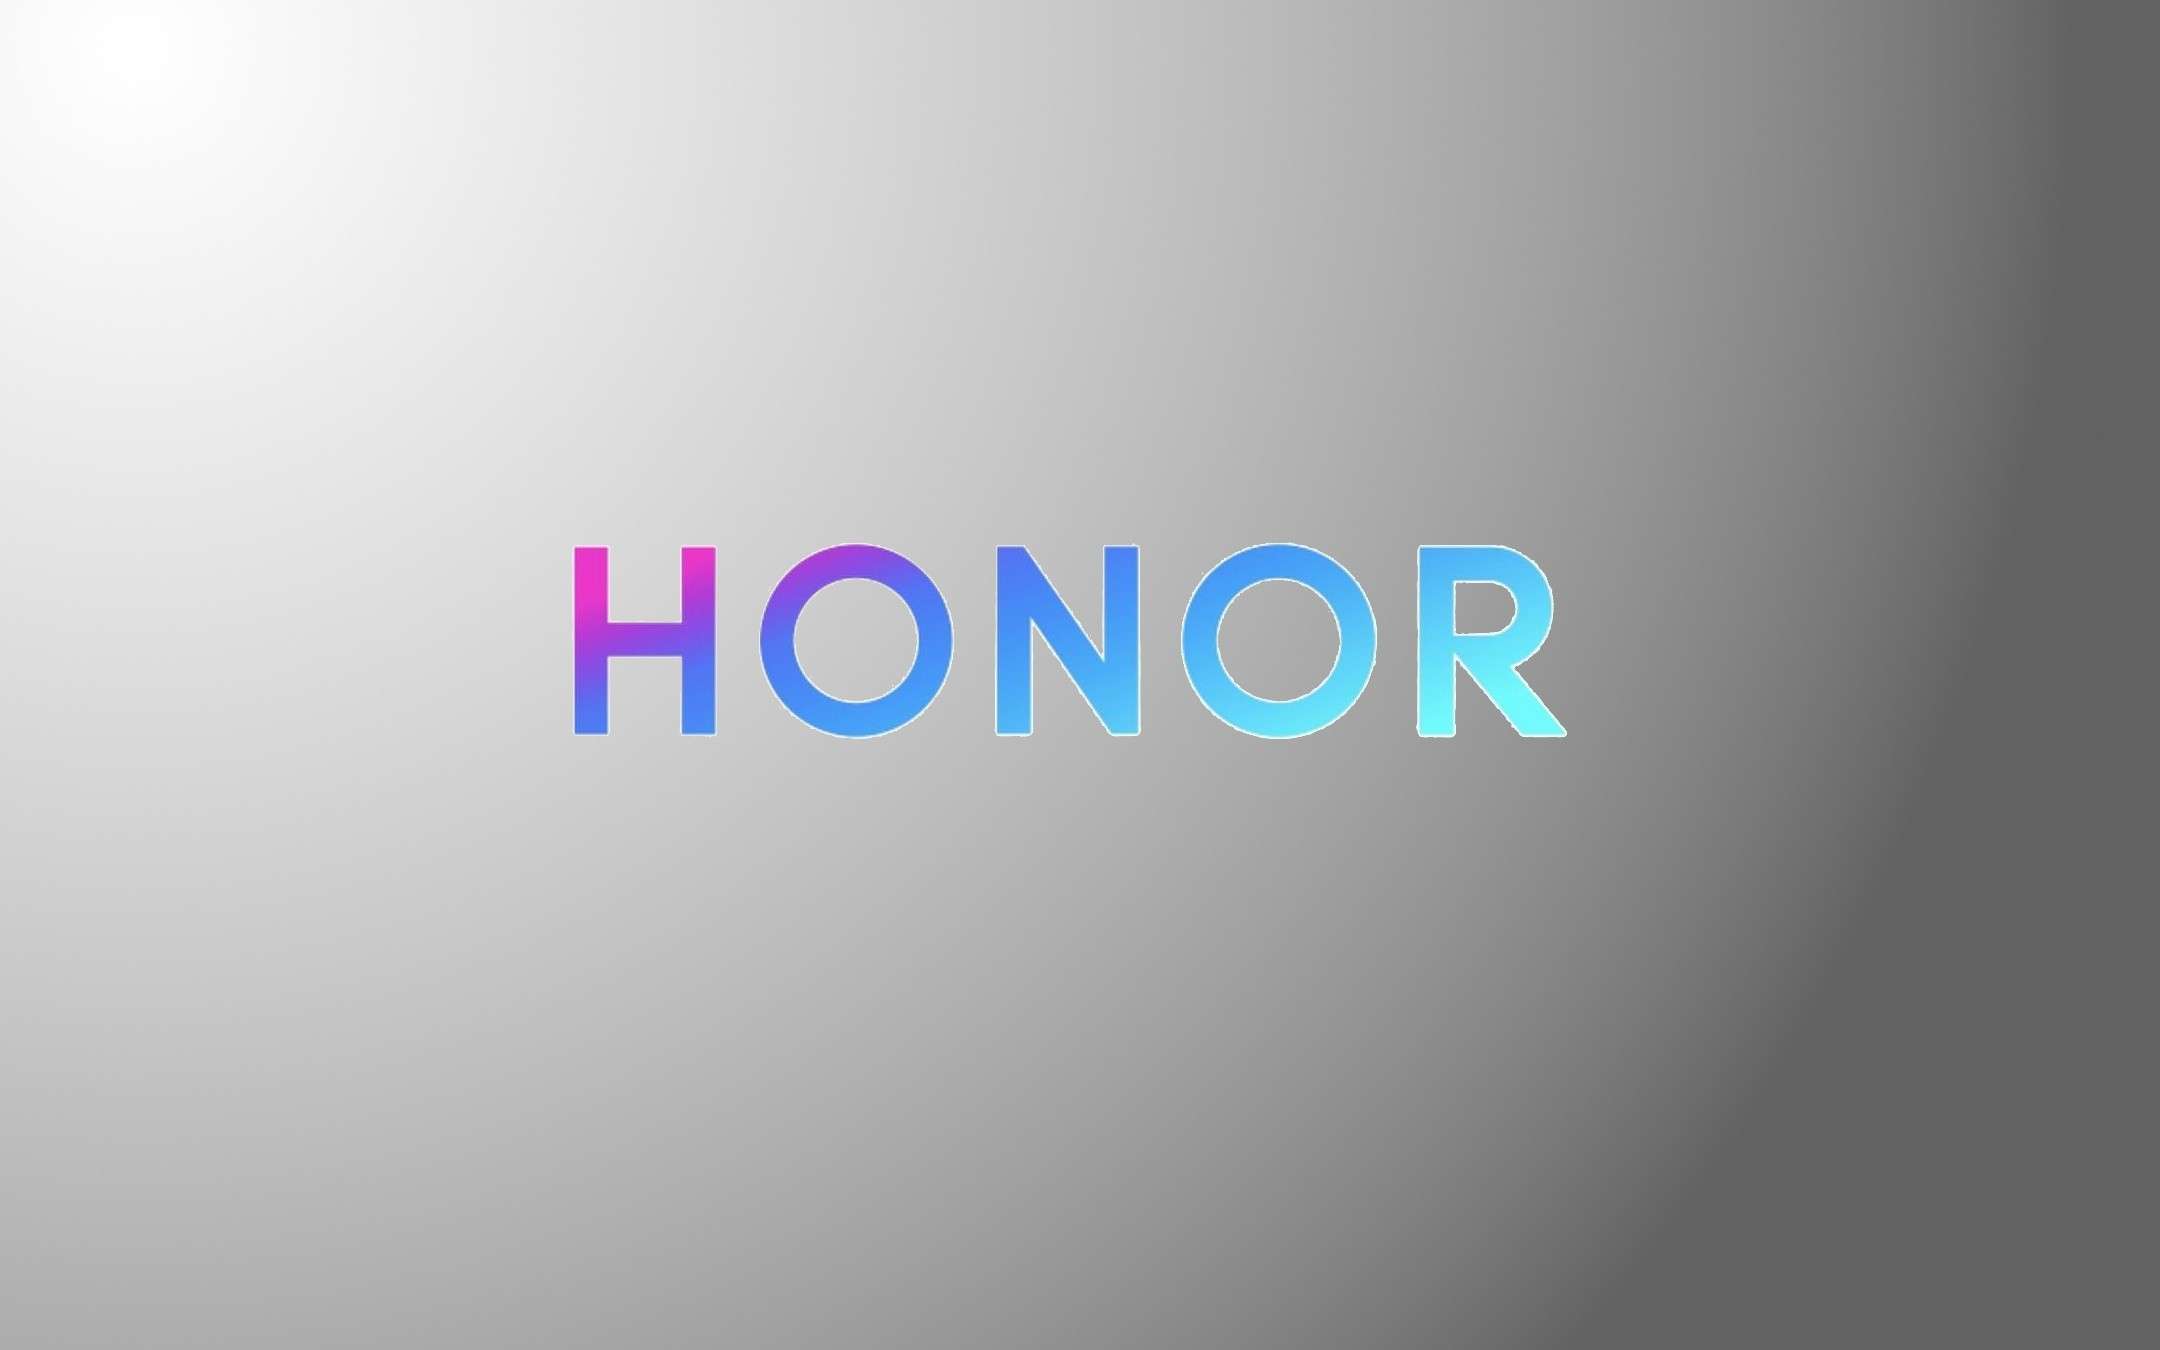 Honor 20 Pro: ma quante fotocamere avrà!